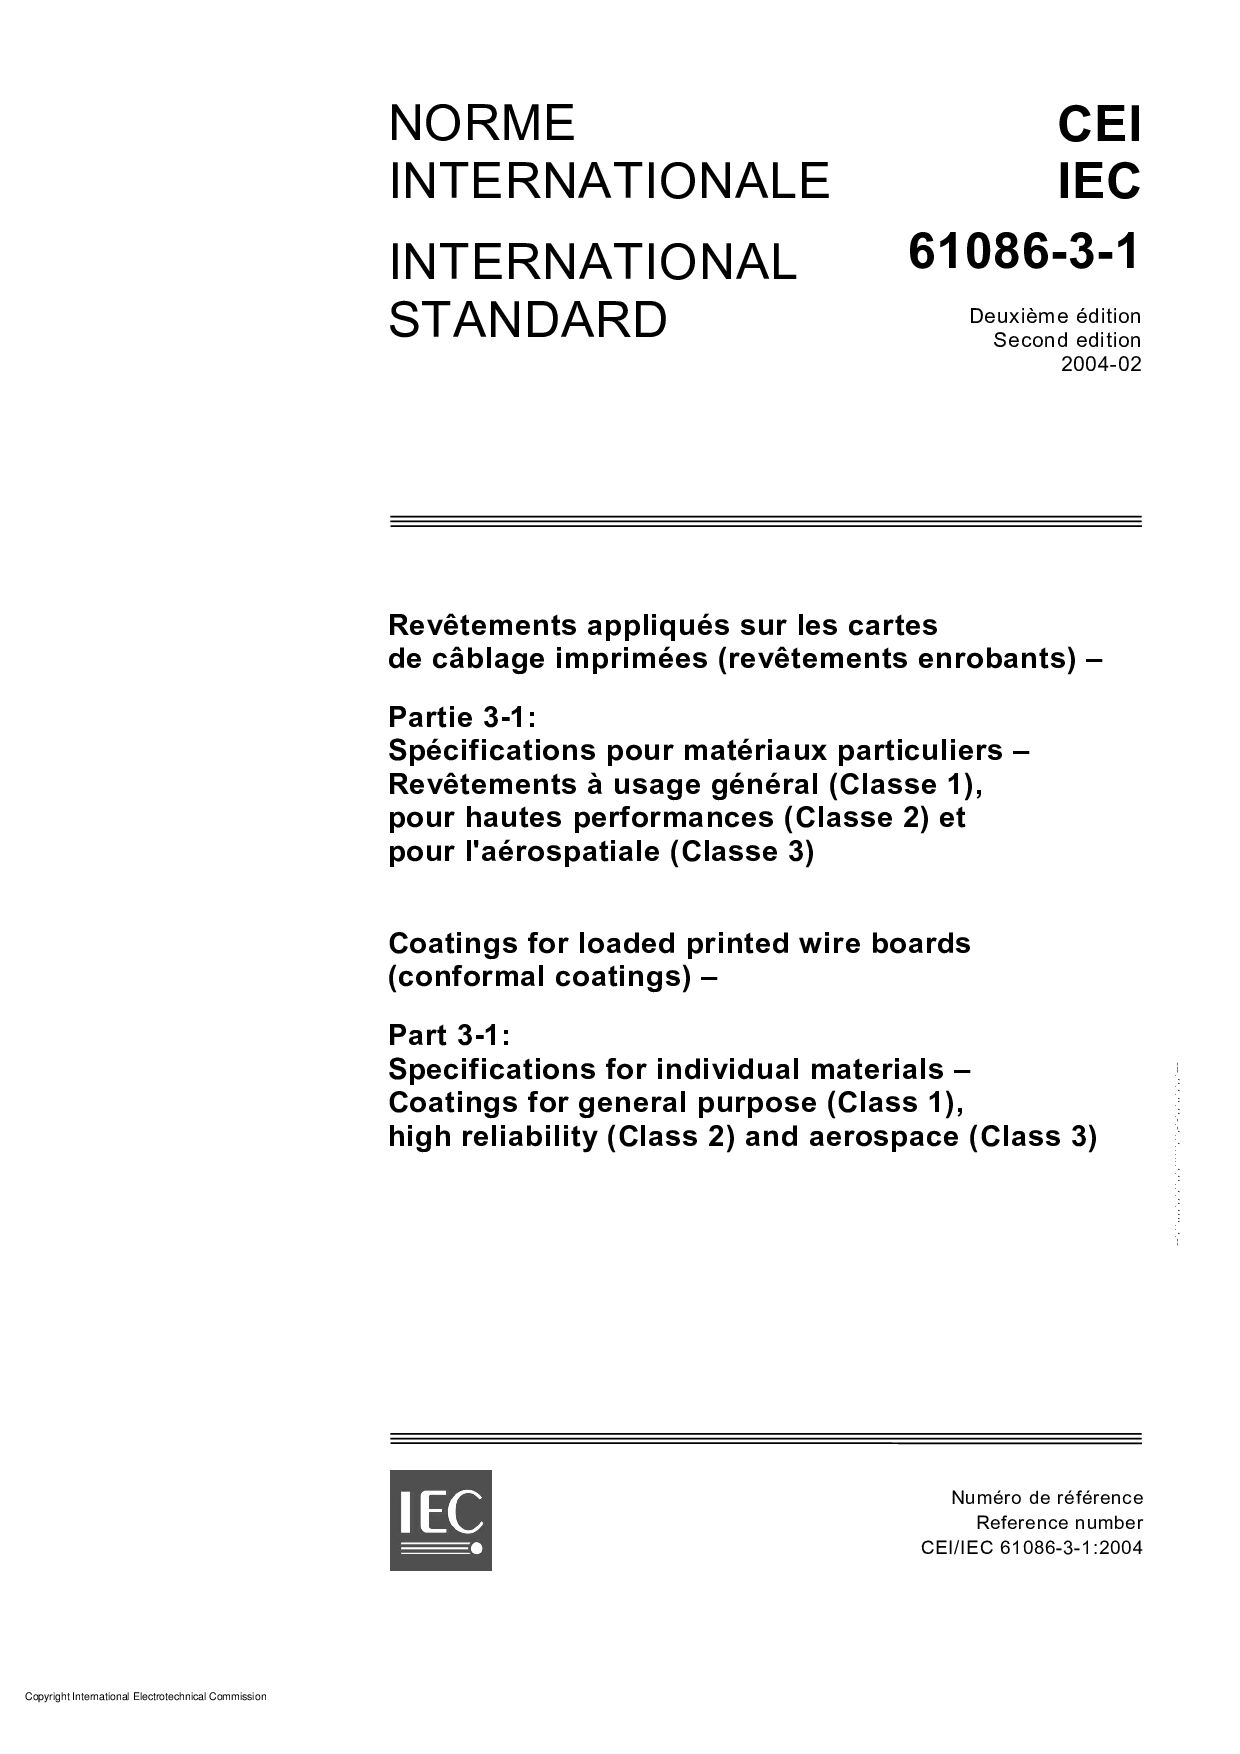 IEC 61086-3-1:2004